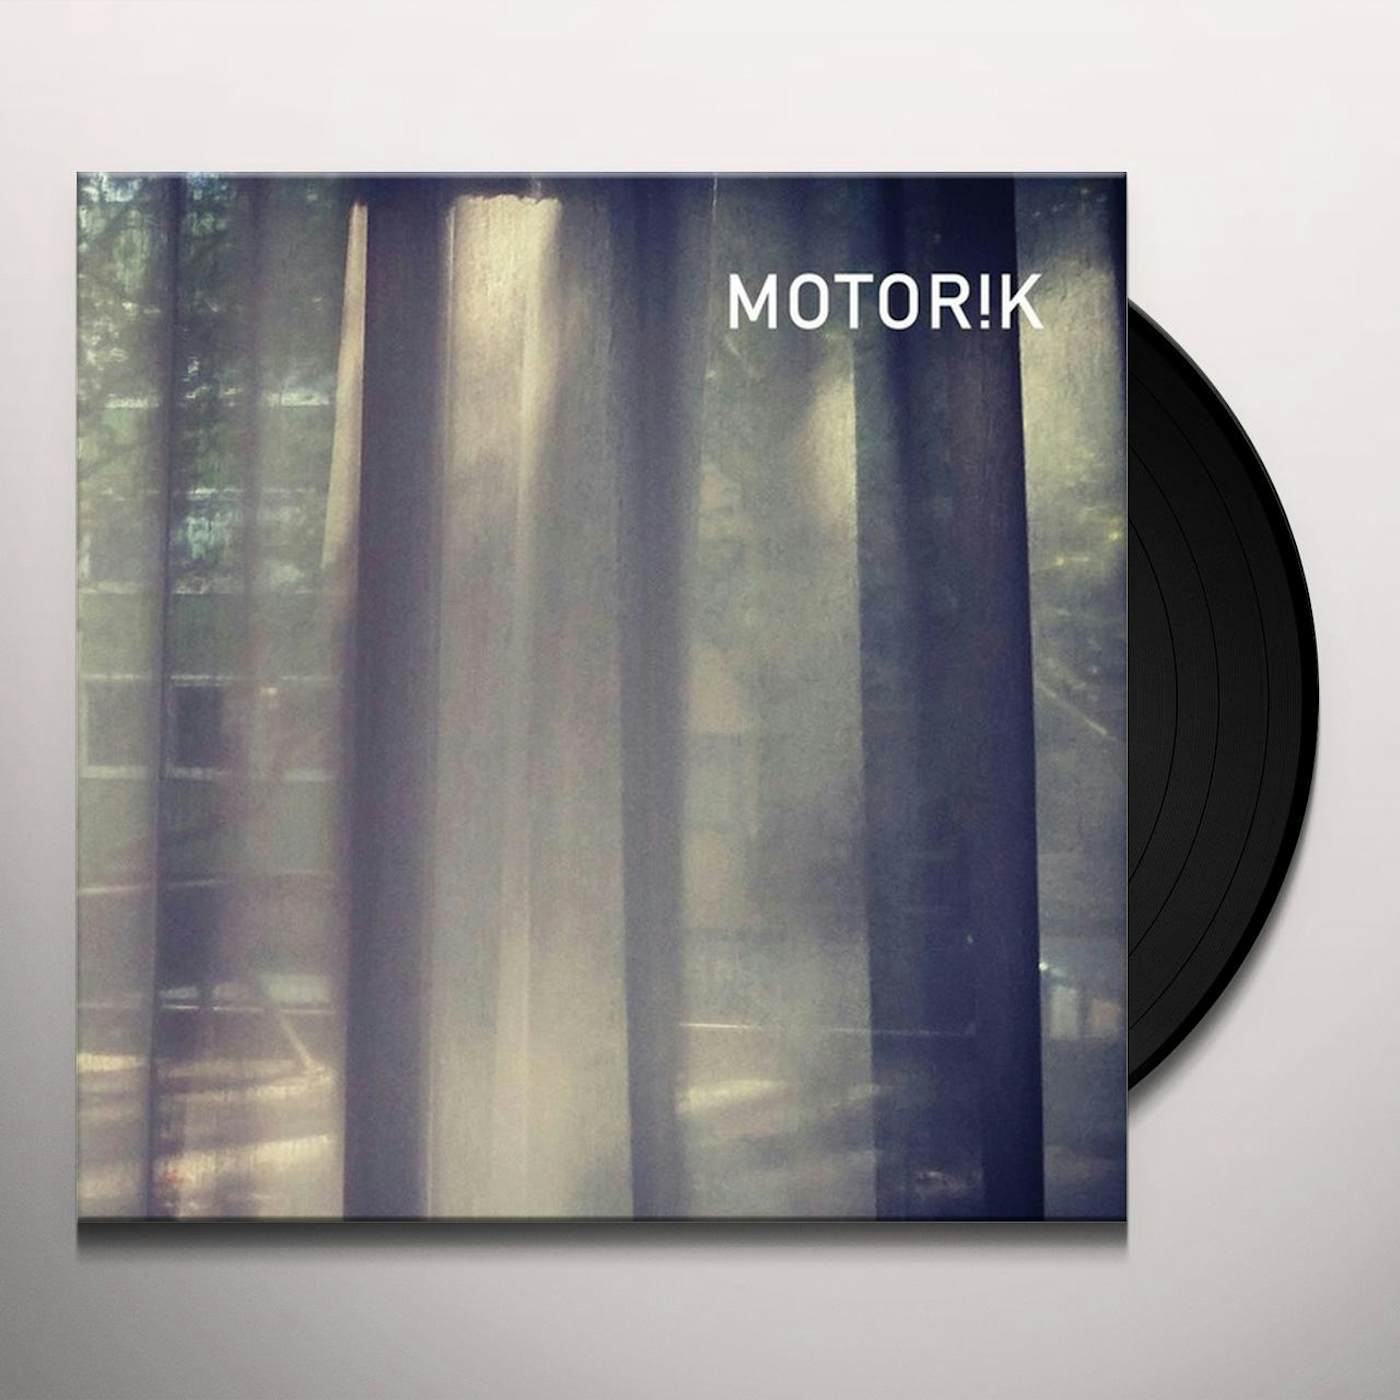 Motor!k Vinyl Record